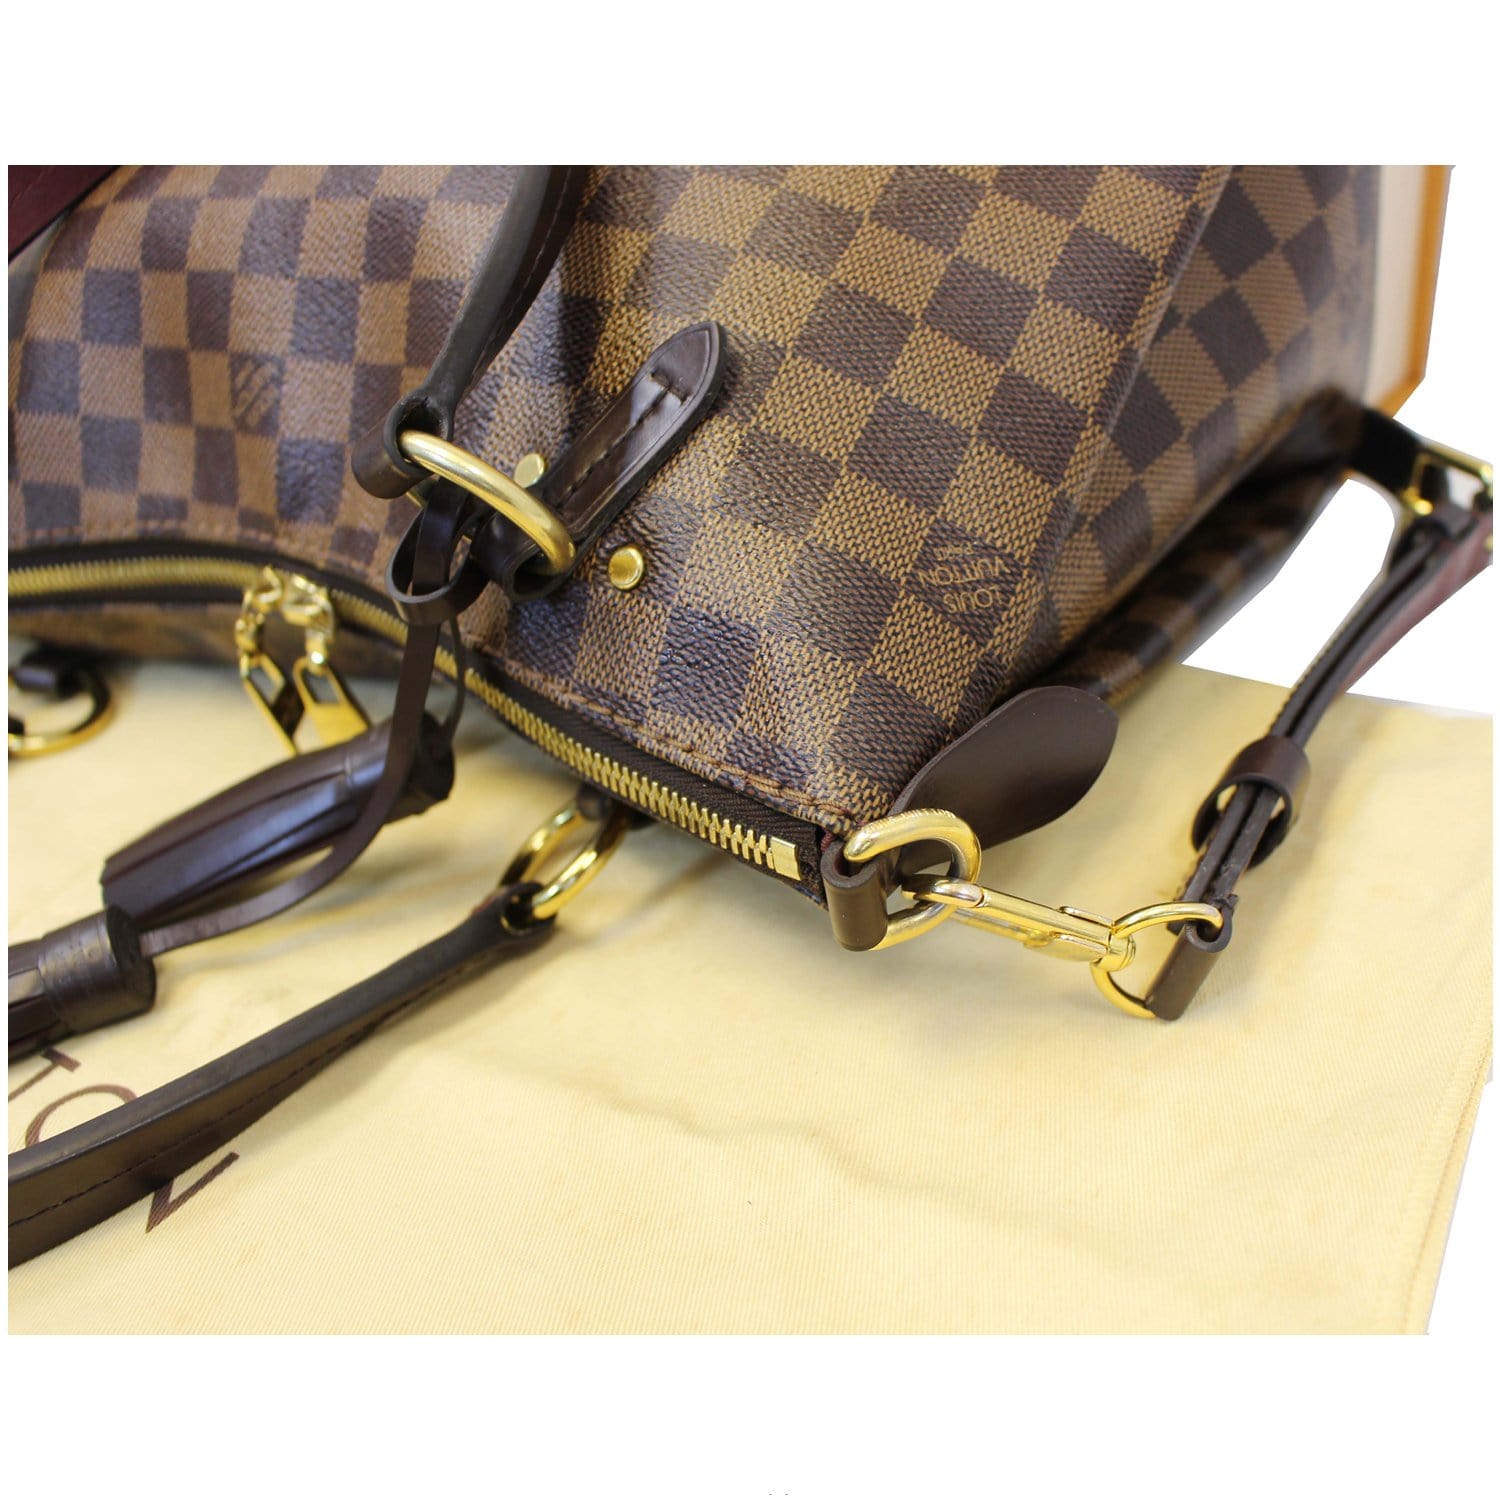 Louis Vuitton Lymington Handbag Damier - ShopStyle Shoulder Bags